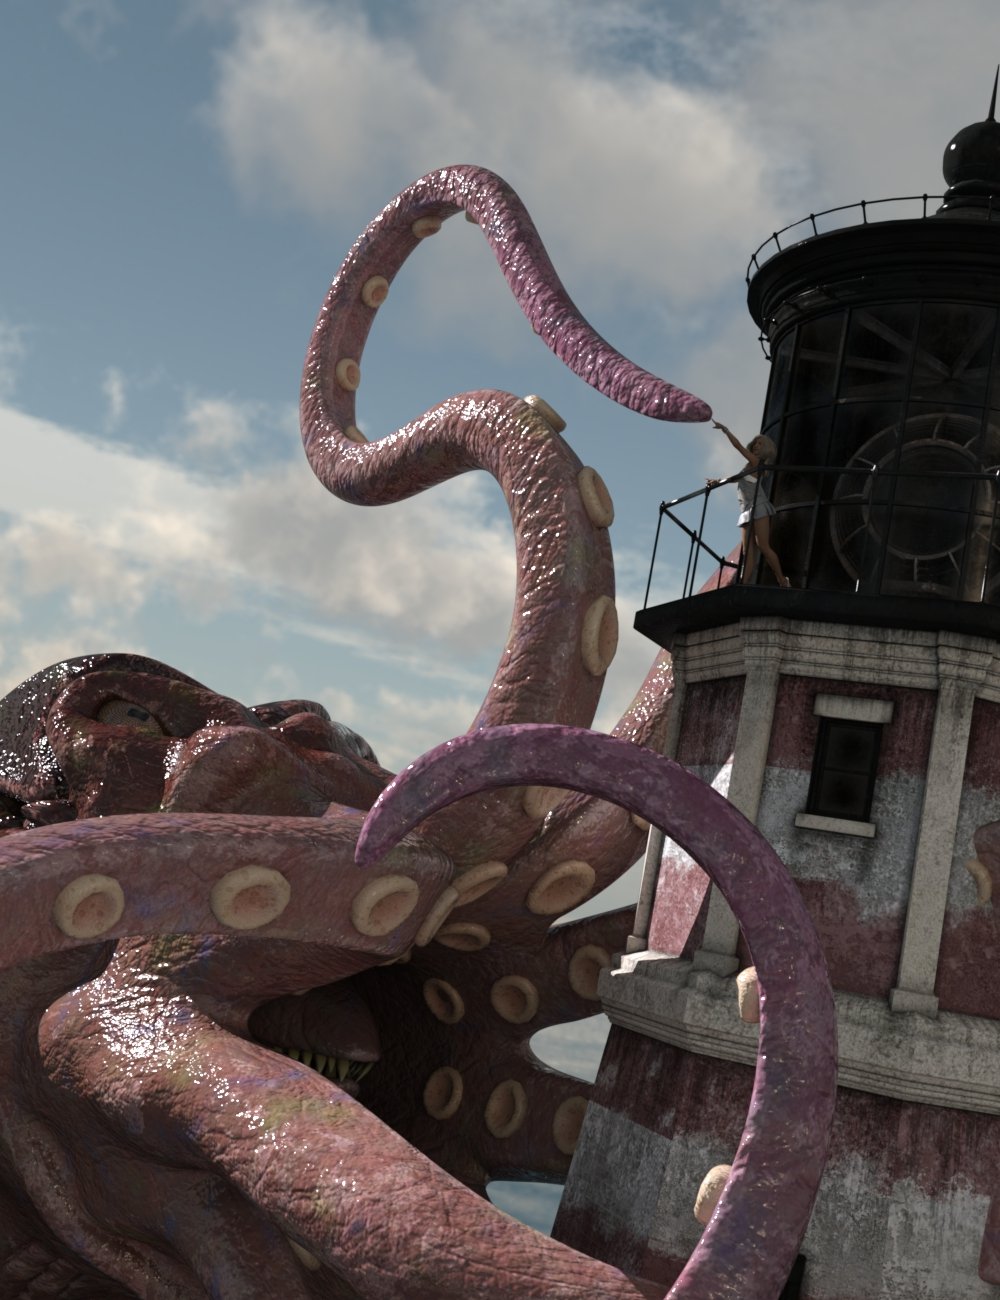 The Great Kraken by: Valandar, 3D Models by Daz 3D